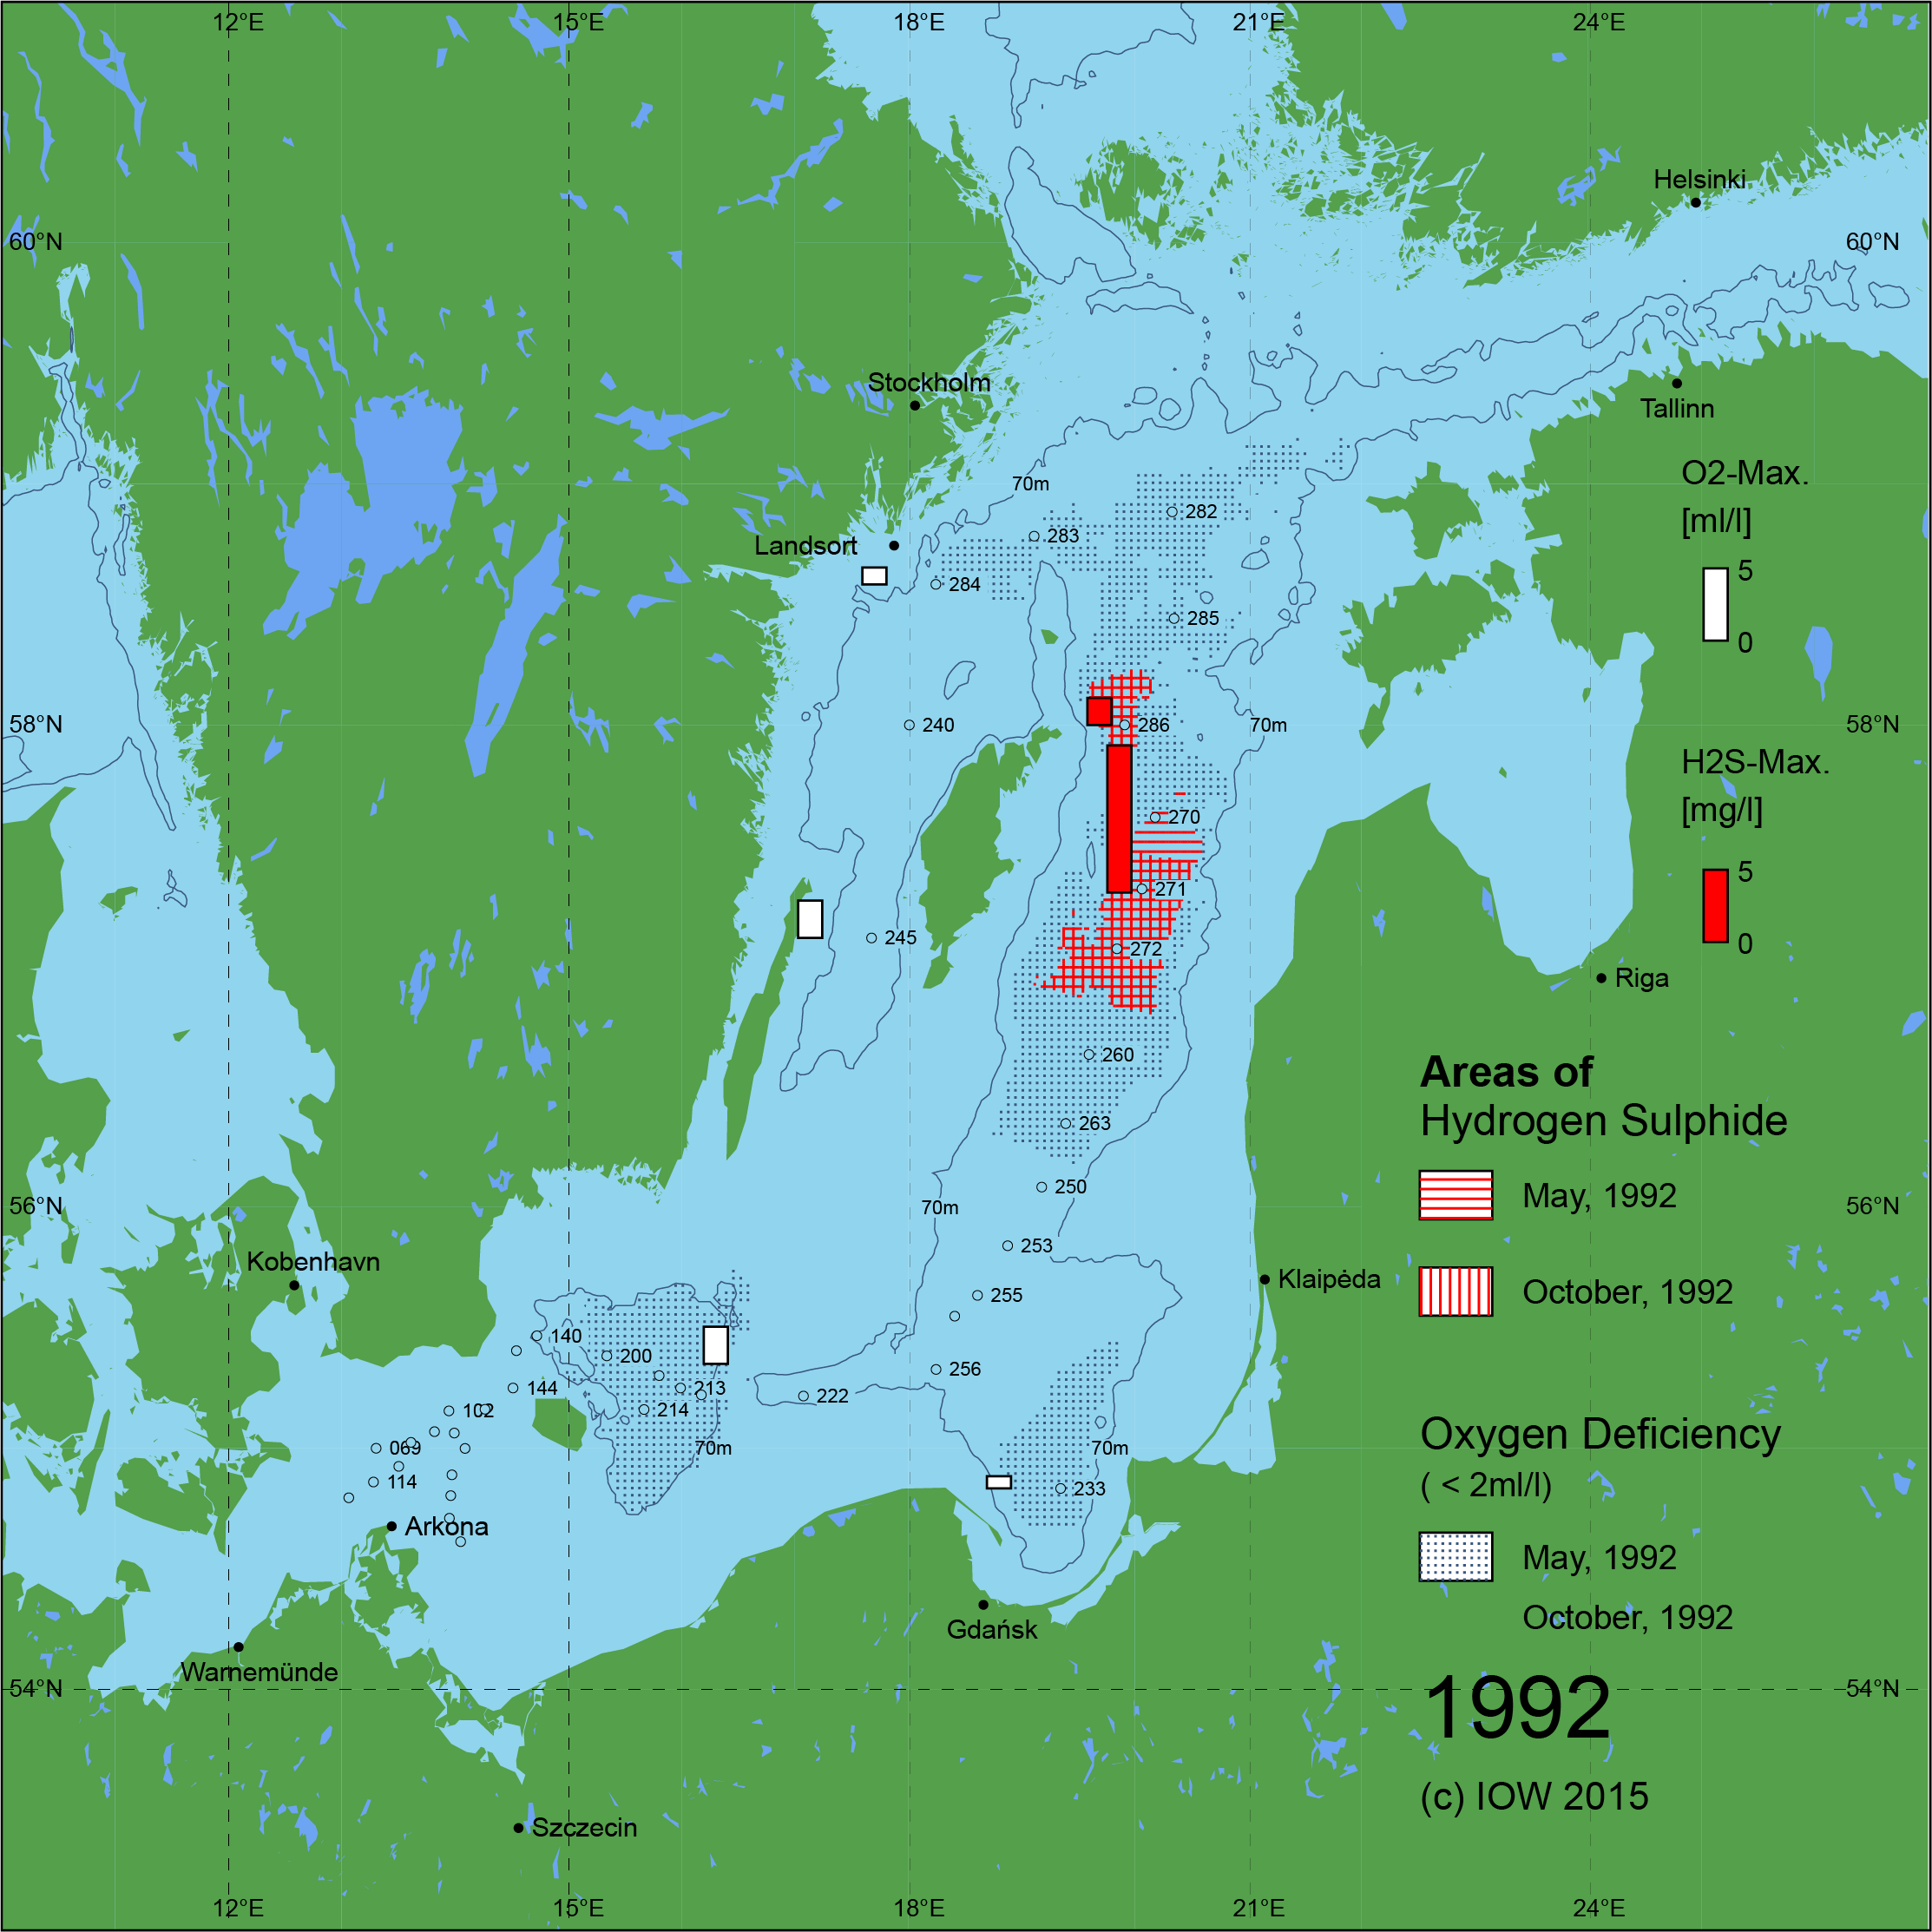 Sauerstoffarme und sauerstofffreie Gebiete in der Ostsee - 1992